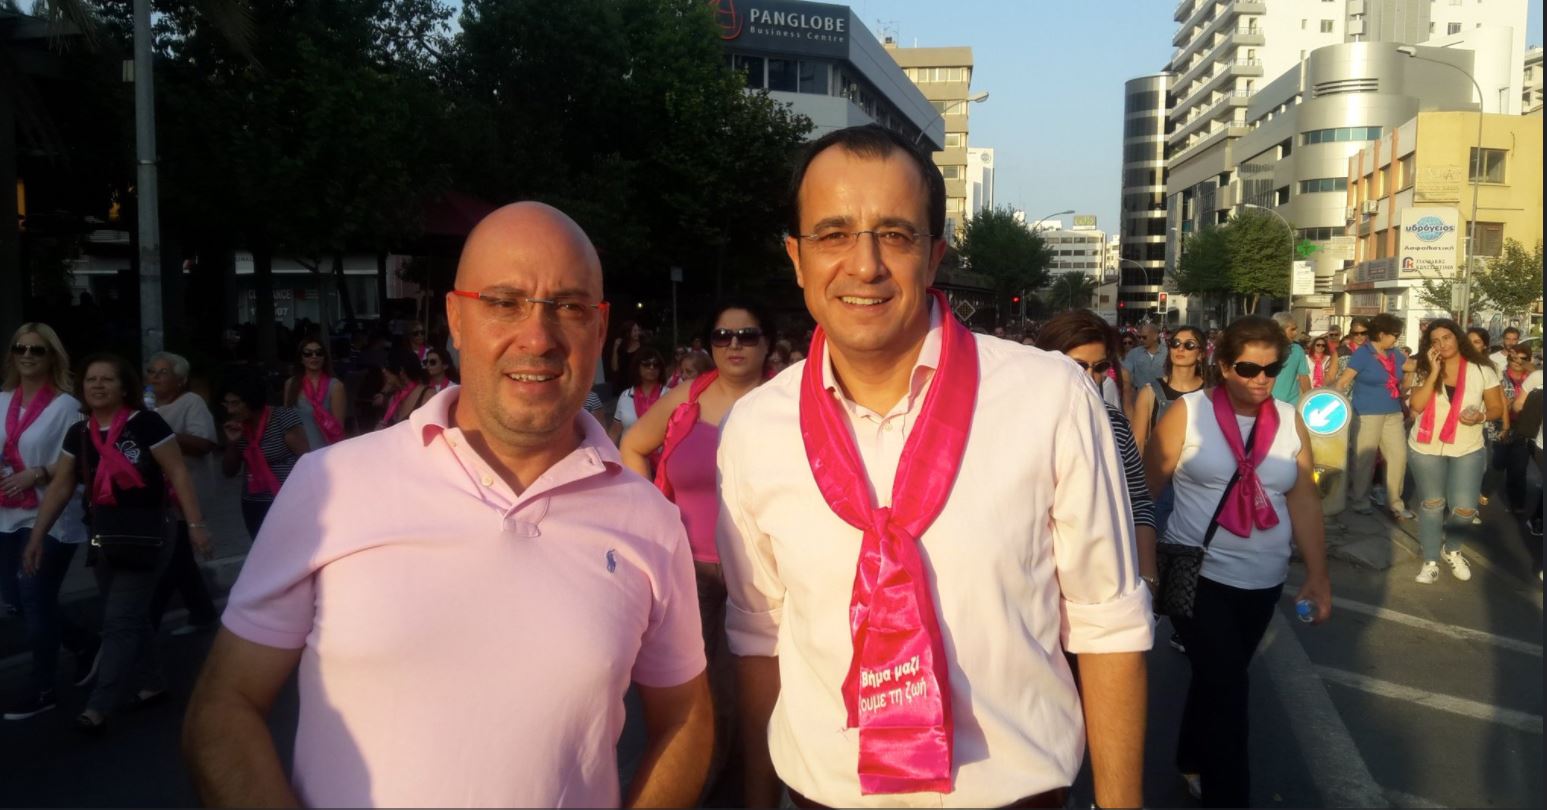 Παμπορίδης και Χριστοδουλίδης ντύθηκαν στα ροζ και περπάτησαν στη Λευκωσία - ΦΩΤΟΓΡΑΦΙΑ